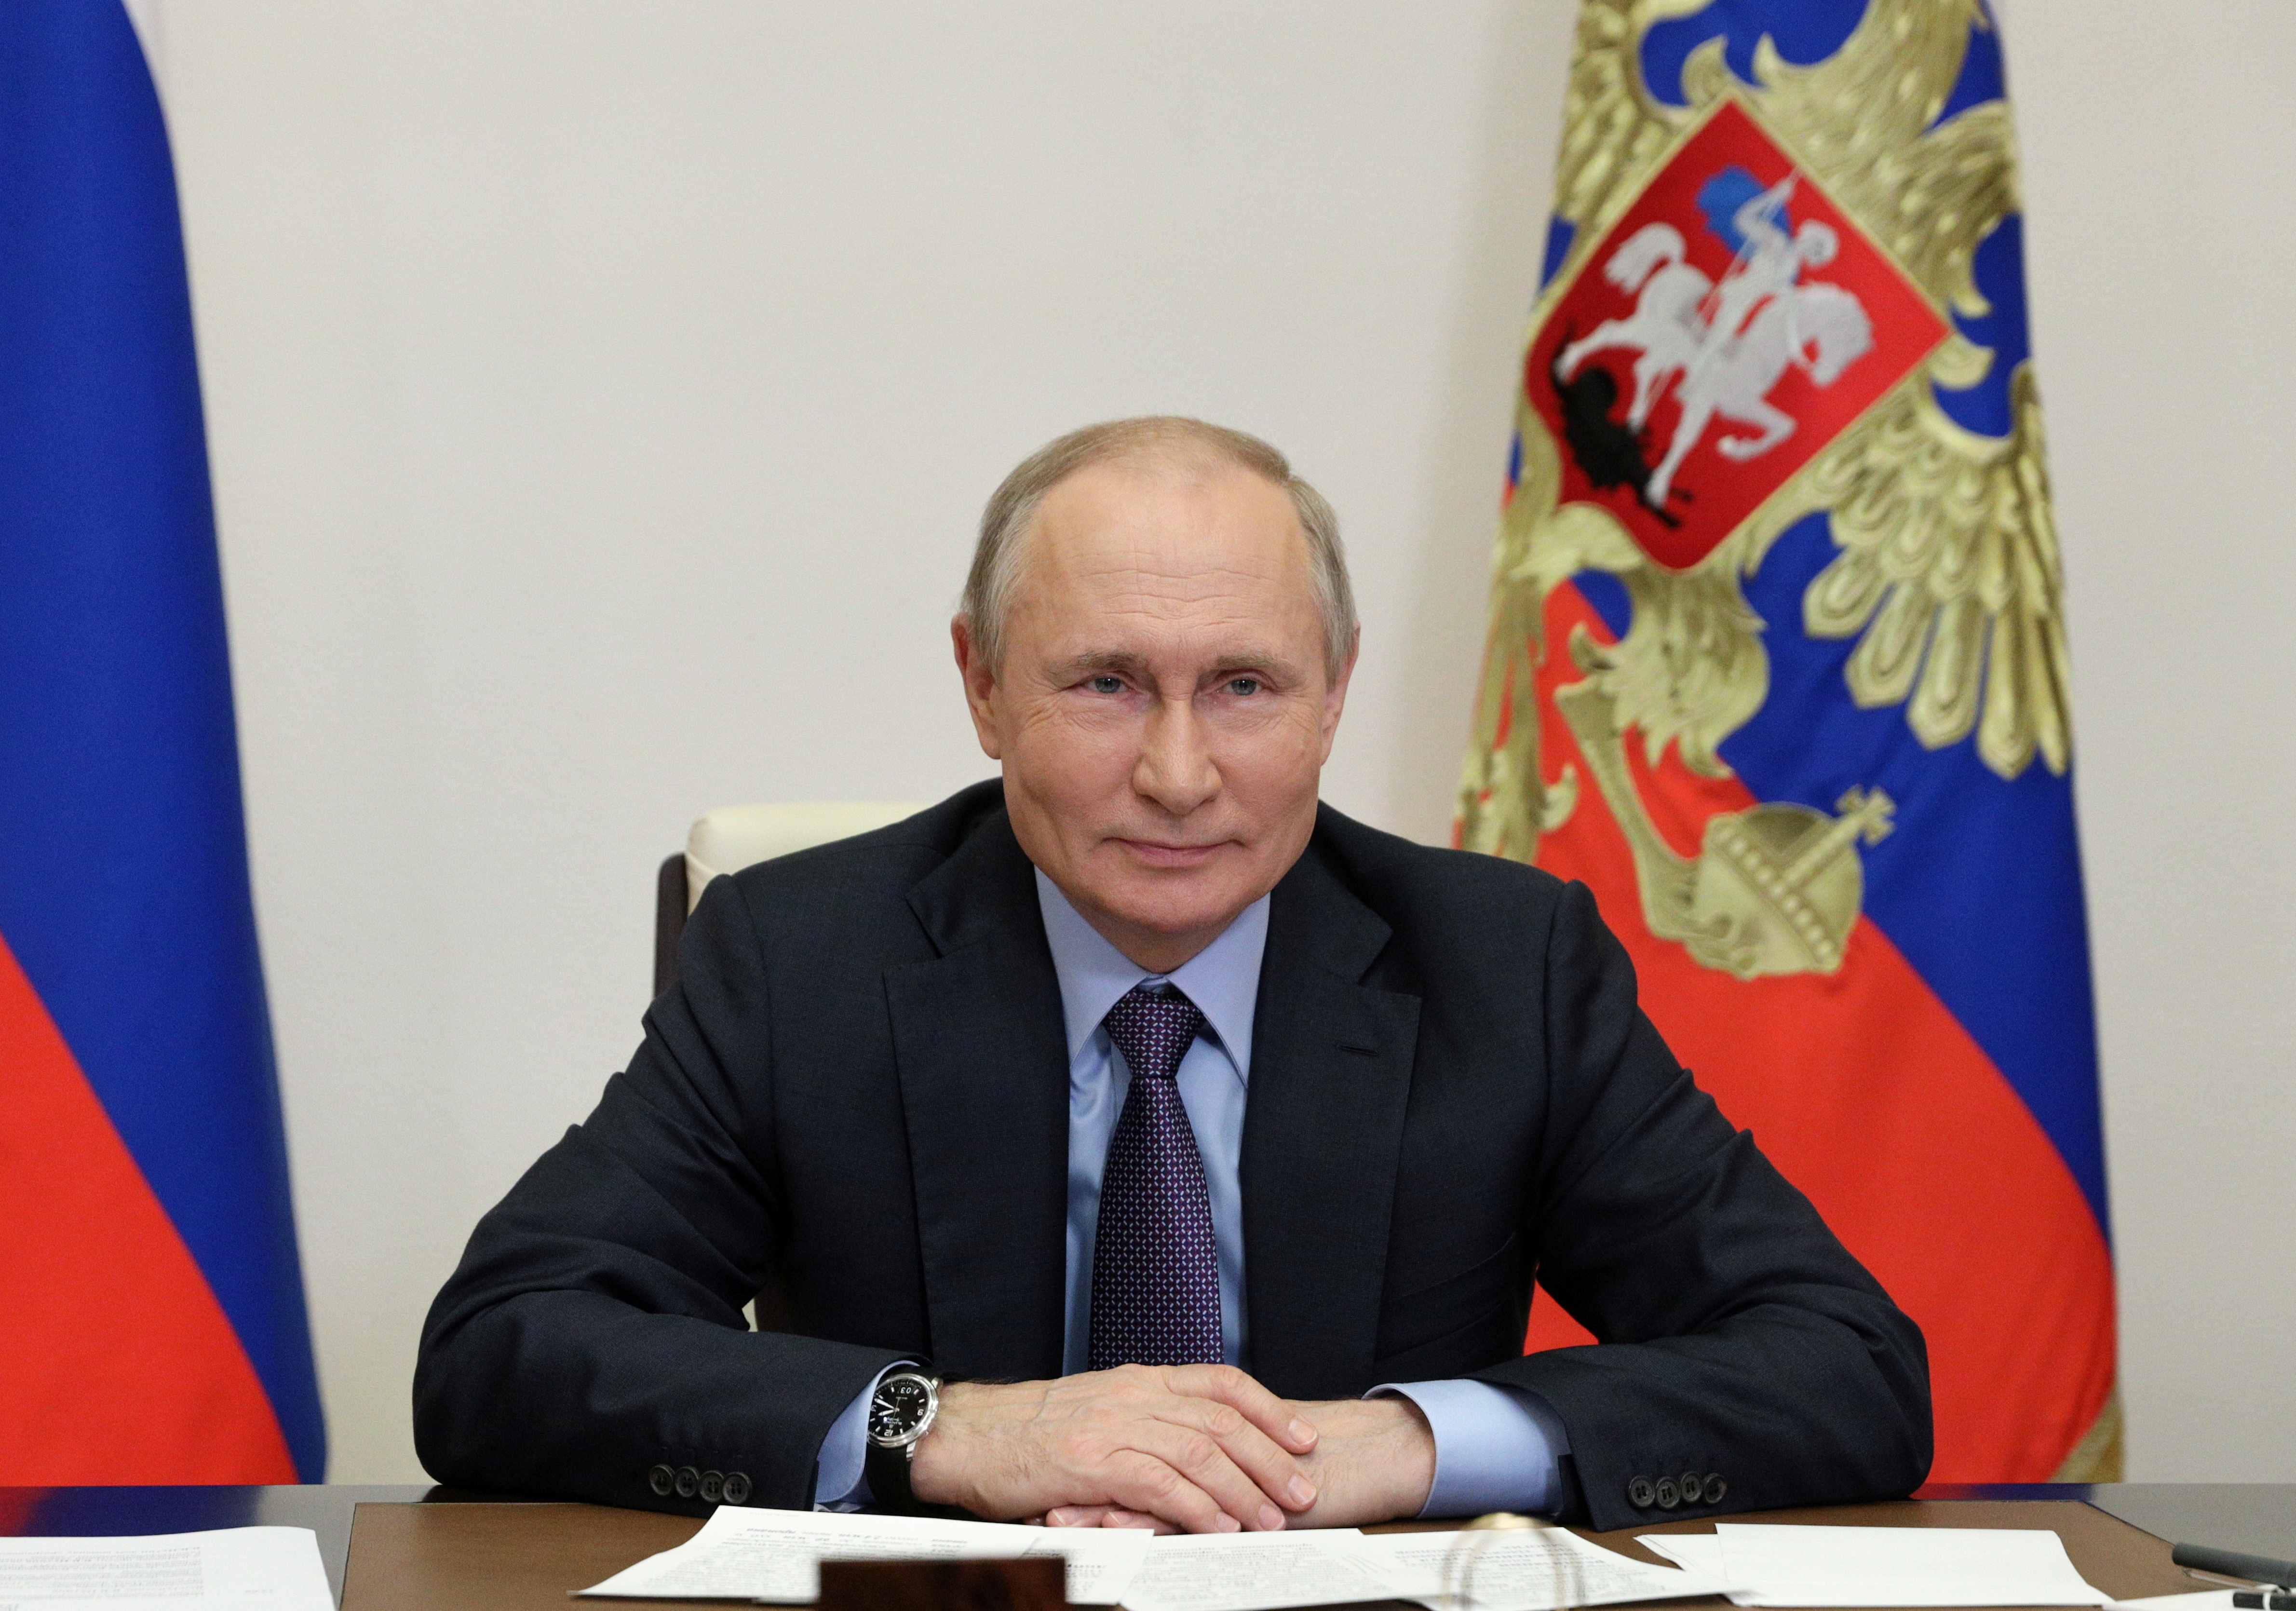 Presidenti rus Vladimir Putin merr pjesë në një ceremoni për nisjen e fabrikës së përpunimit të gazit Amur të menaxhuar nga kompania Gazprom përmes lidhjes video jashtë Moskës, Rusi, 9 qershor 2021. Sputnik/Sergei Ilyin/Kremlin nëpërmjet REUTERS